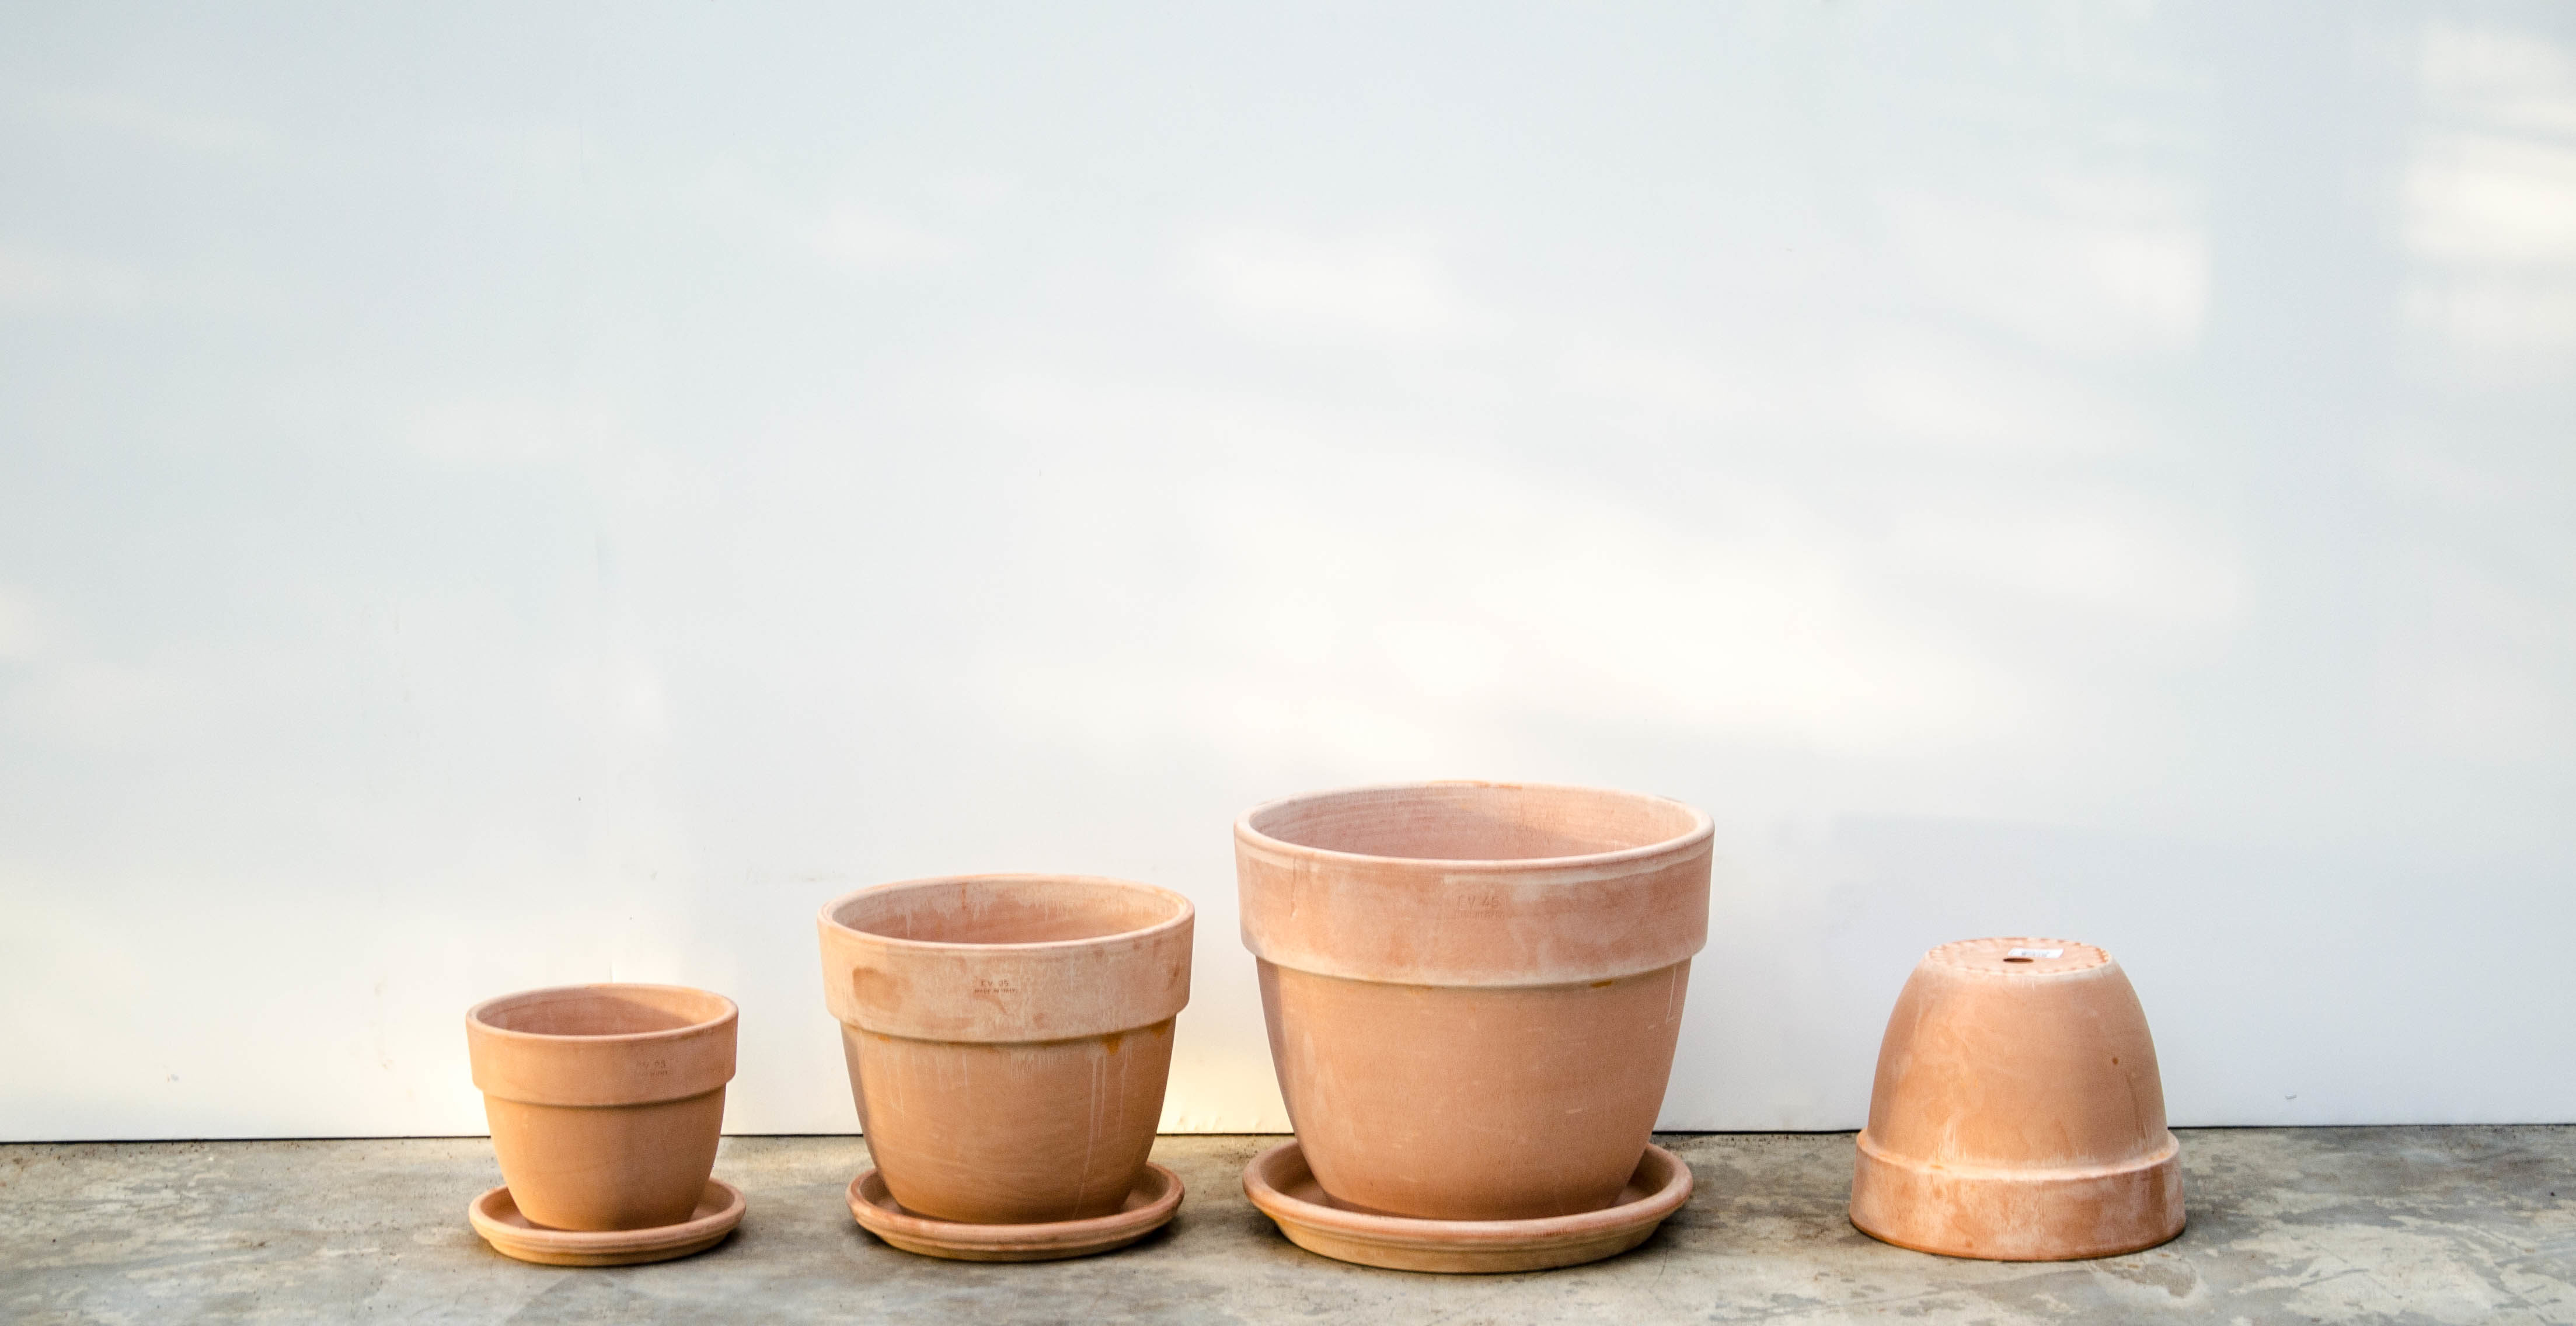 Pots de fleurs en terre cuite : Soucoupes et pots en terre cuite